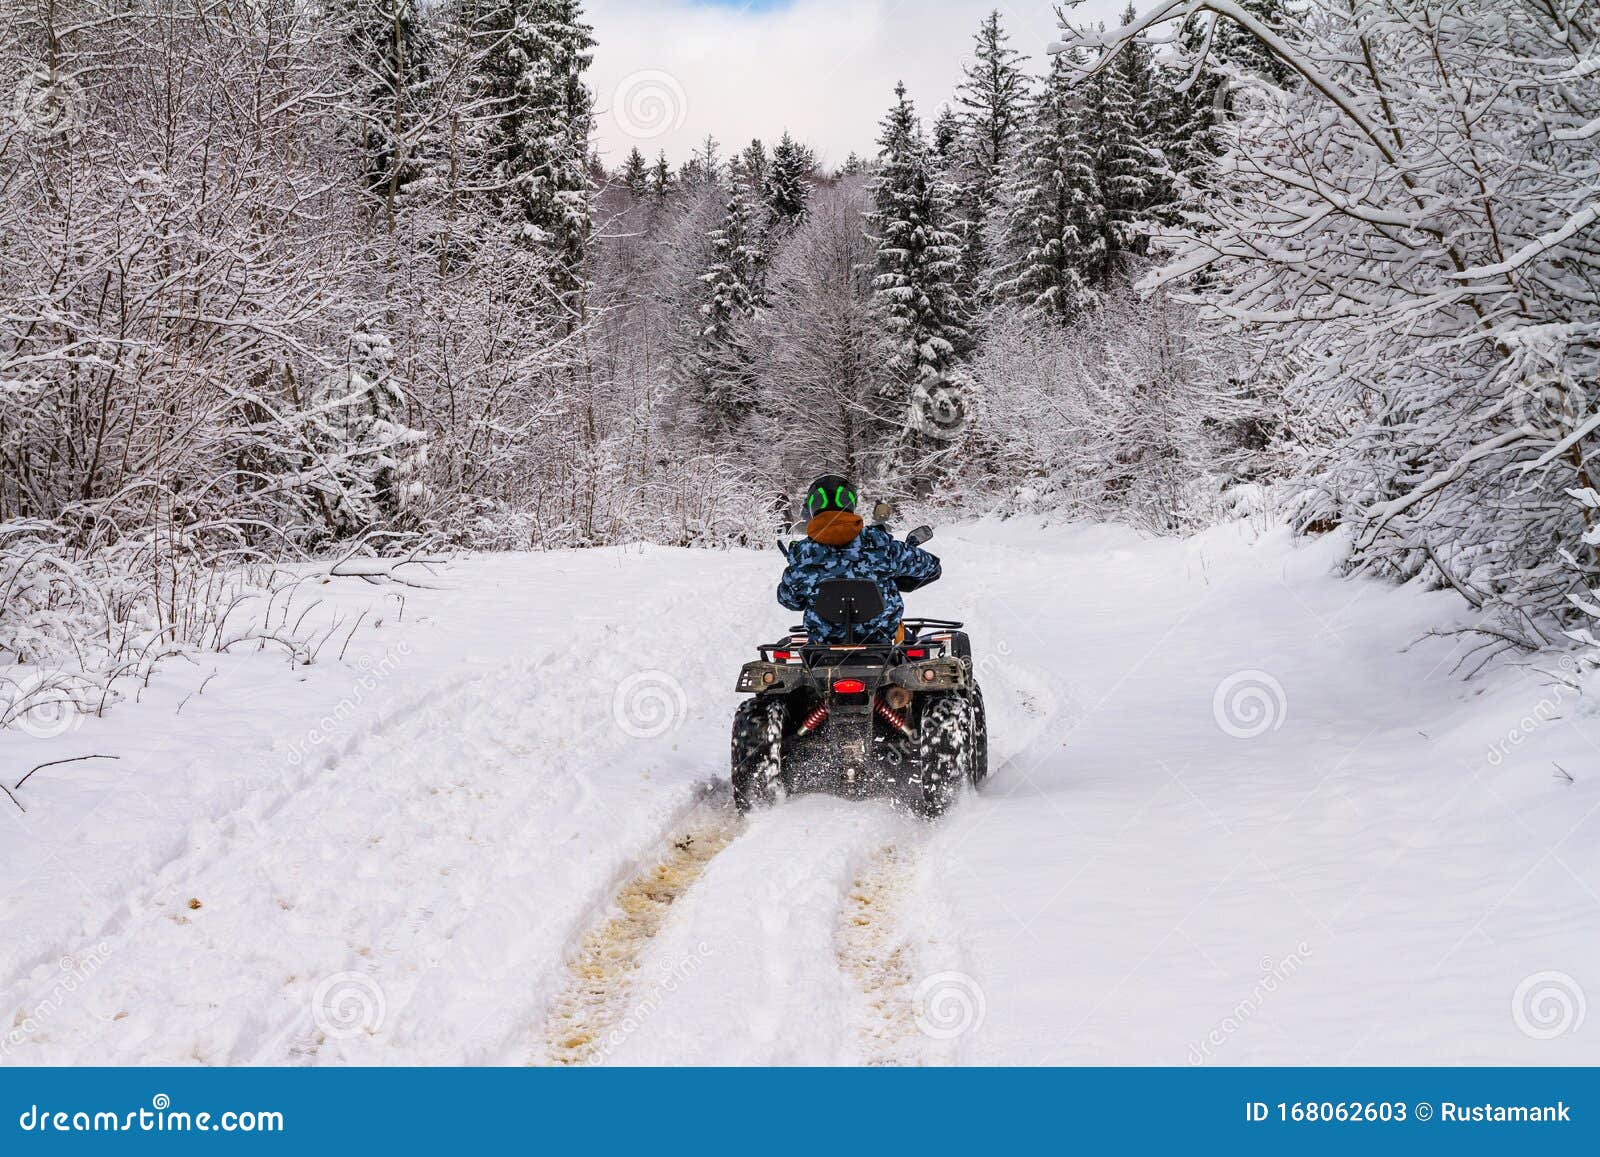 冬季风景 在冬季山林中使用四轮自行车欣赏雪路的景色库存图片 图片包括有在冬季山林中使用四轮自行车欣赏雪路的景色 冬季风景